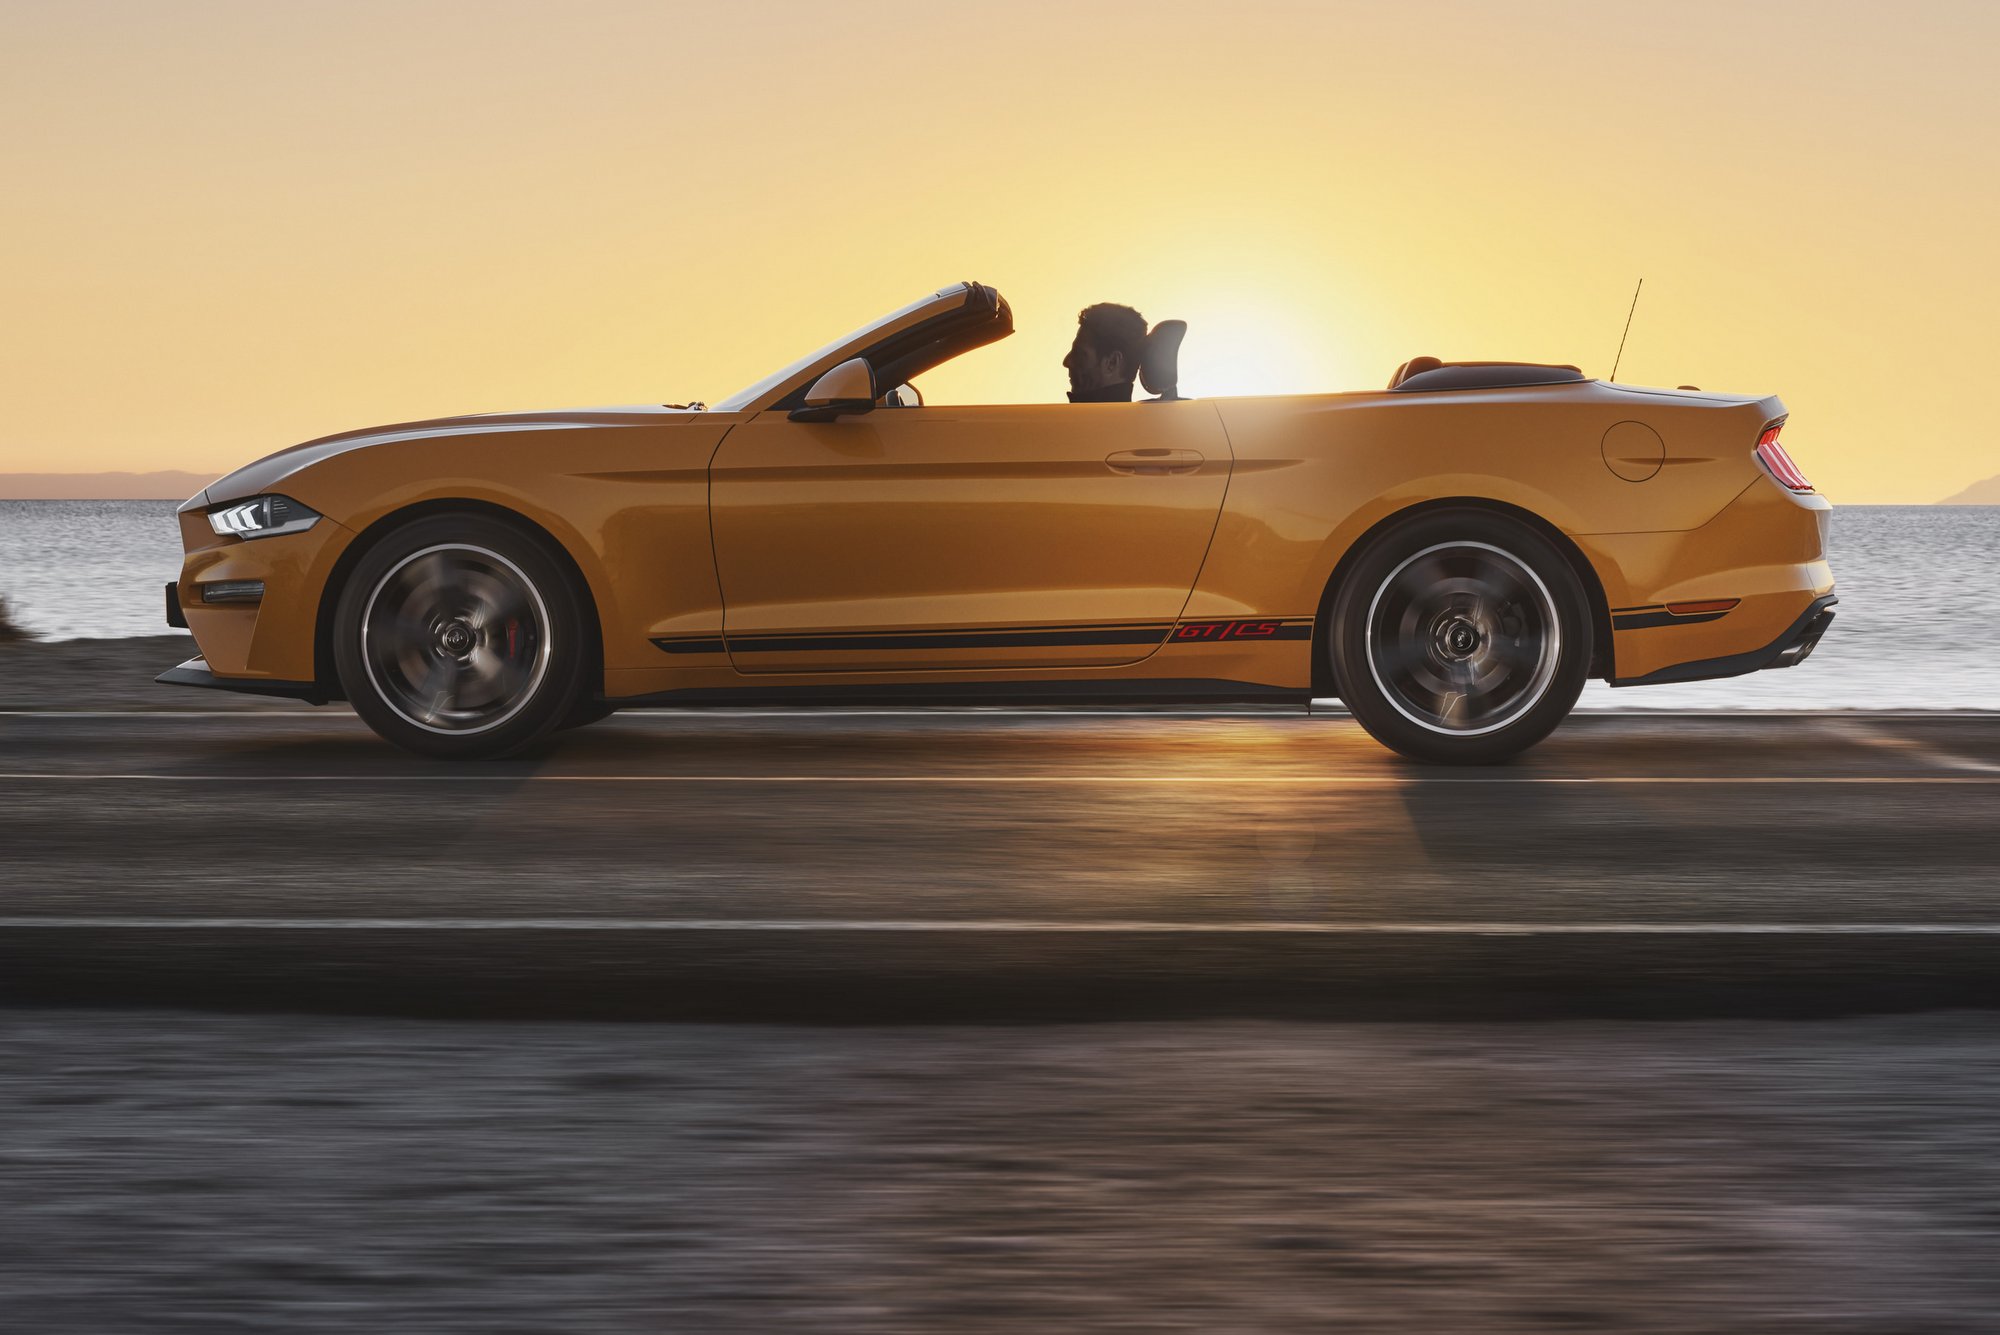 Ezzel a Mustanggal csak napsütésben stílusos autózni 7